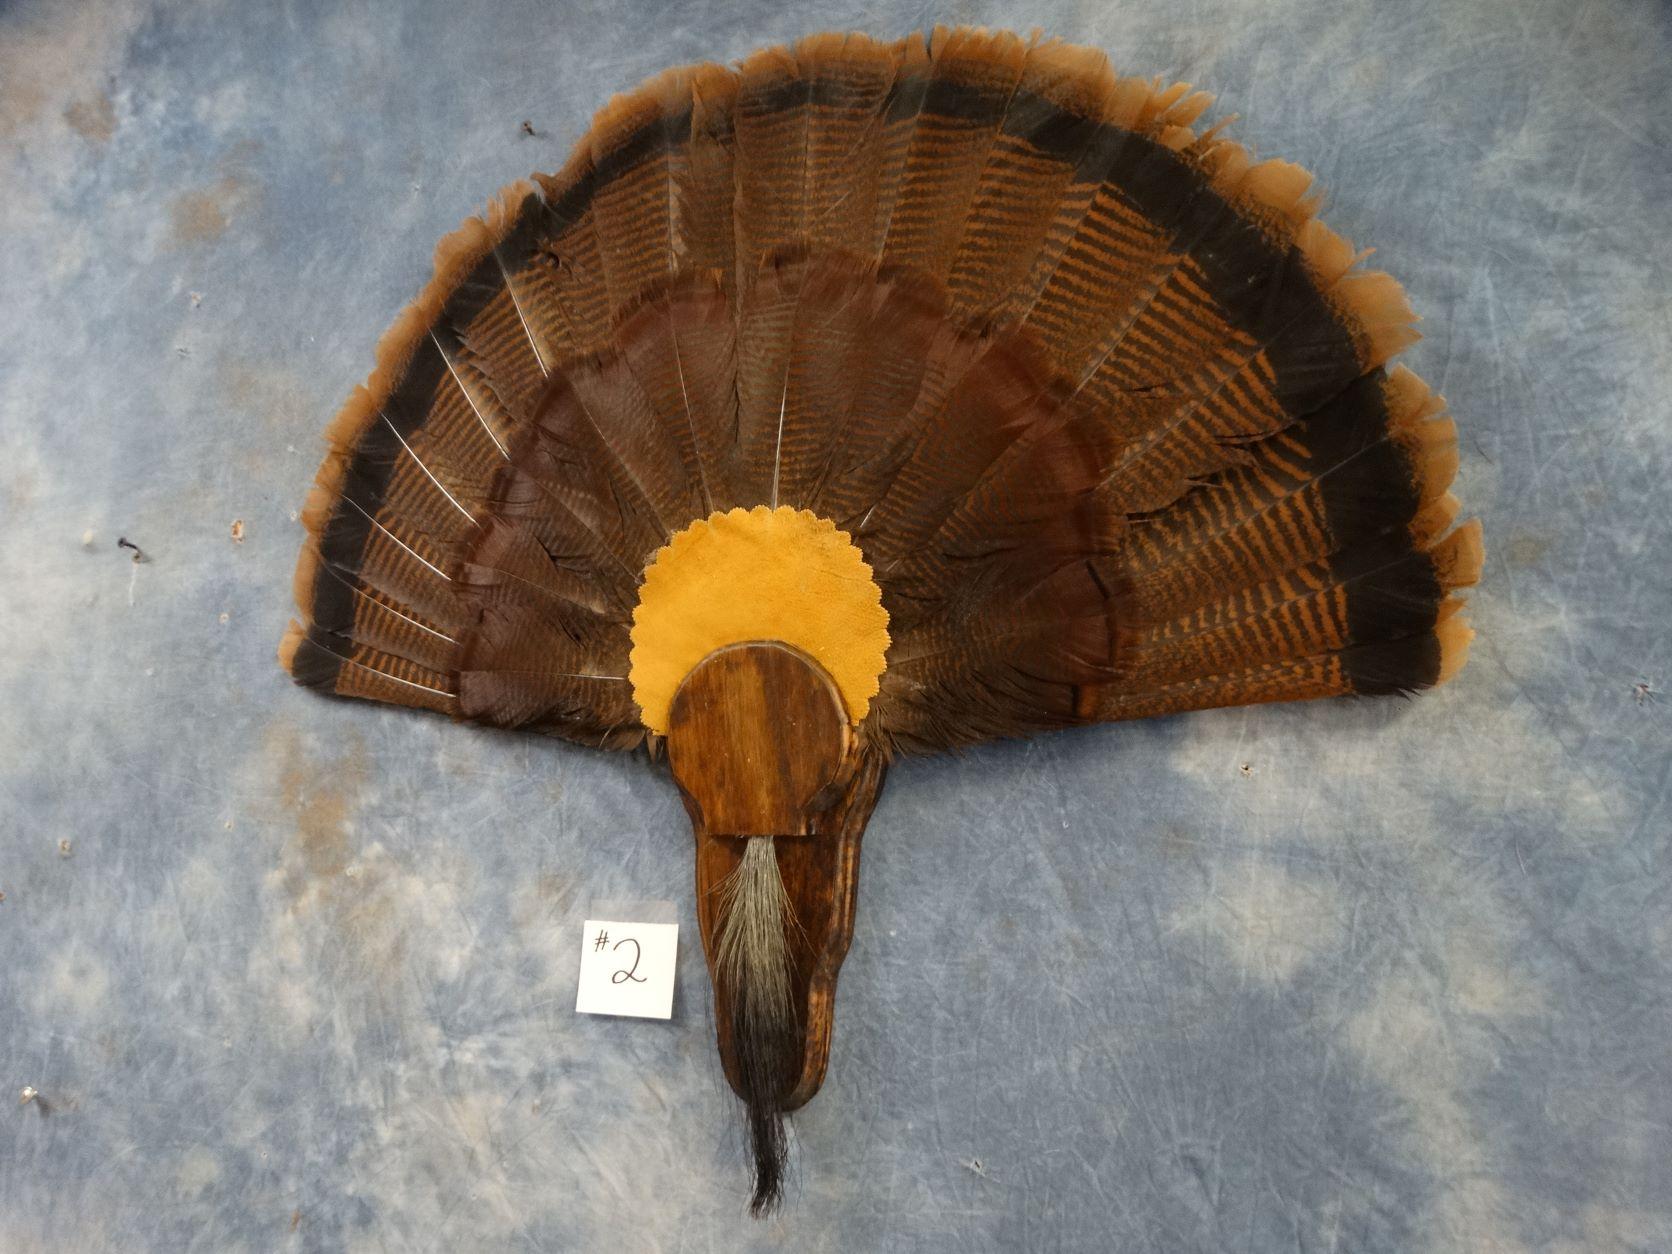 Wild Turkey Tail & Beard Mount on Panel Taxidermy